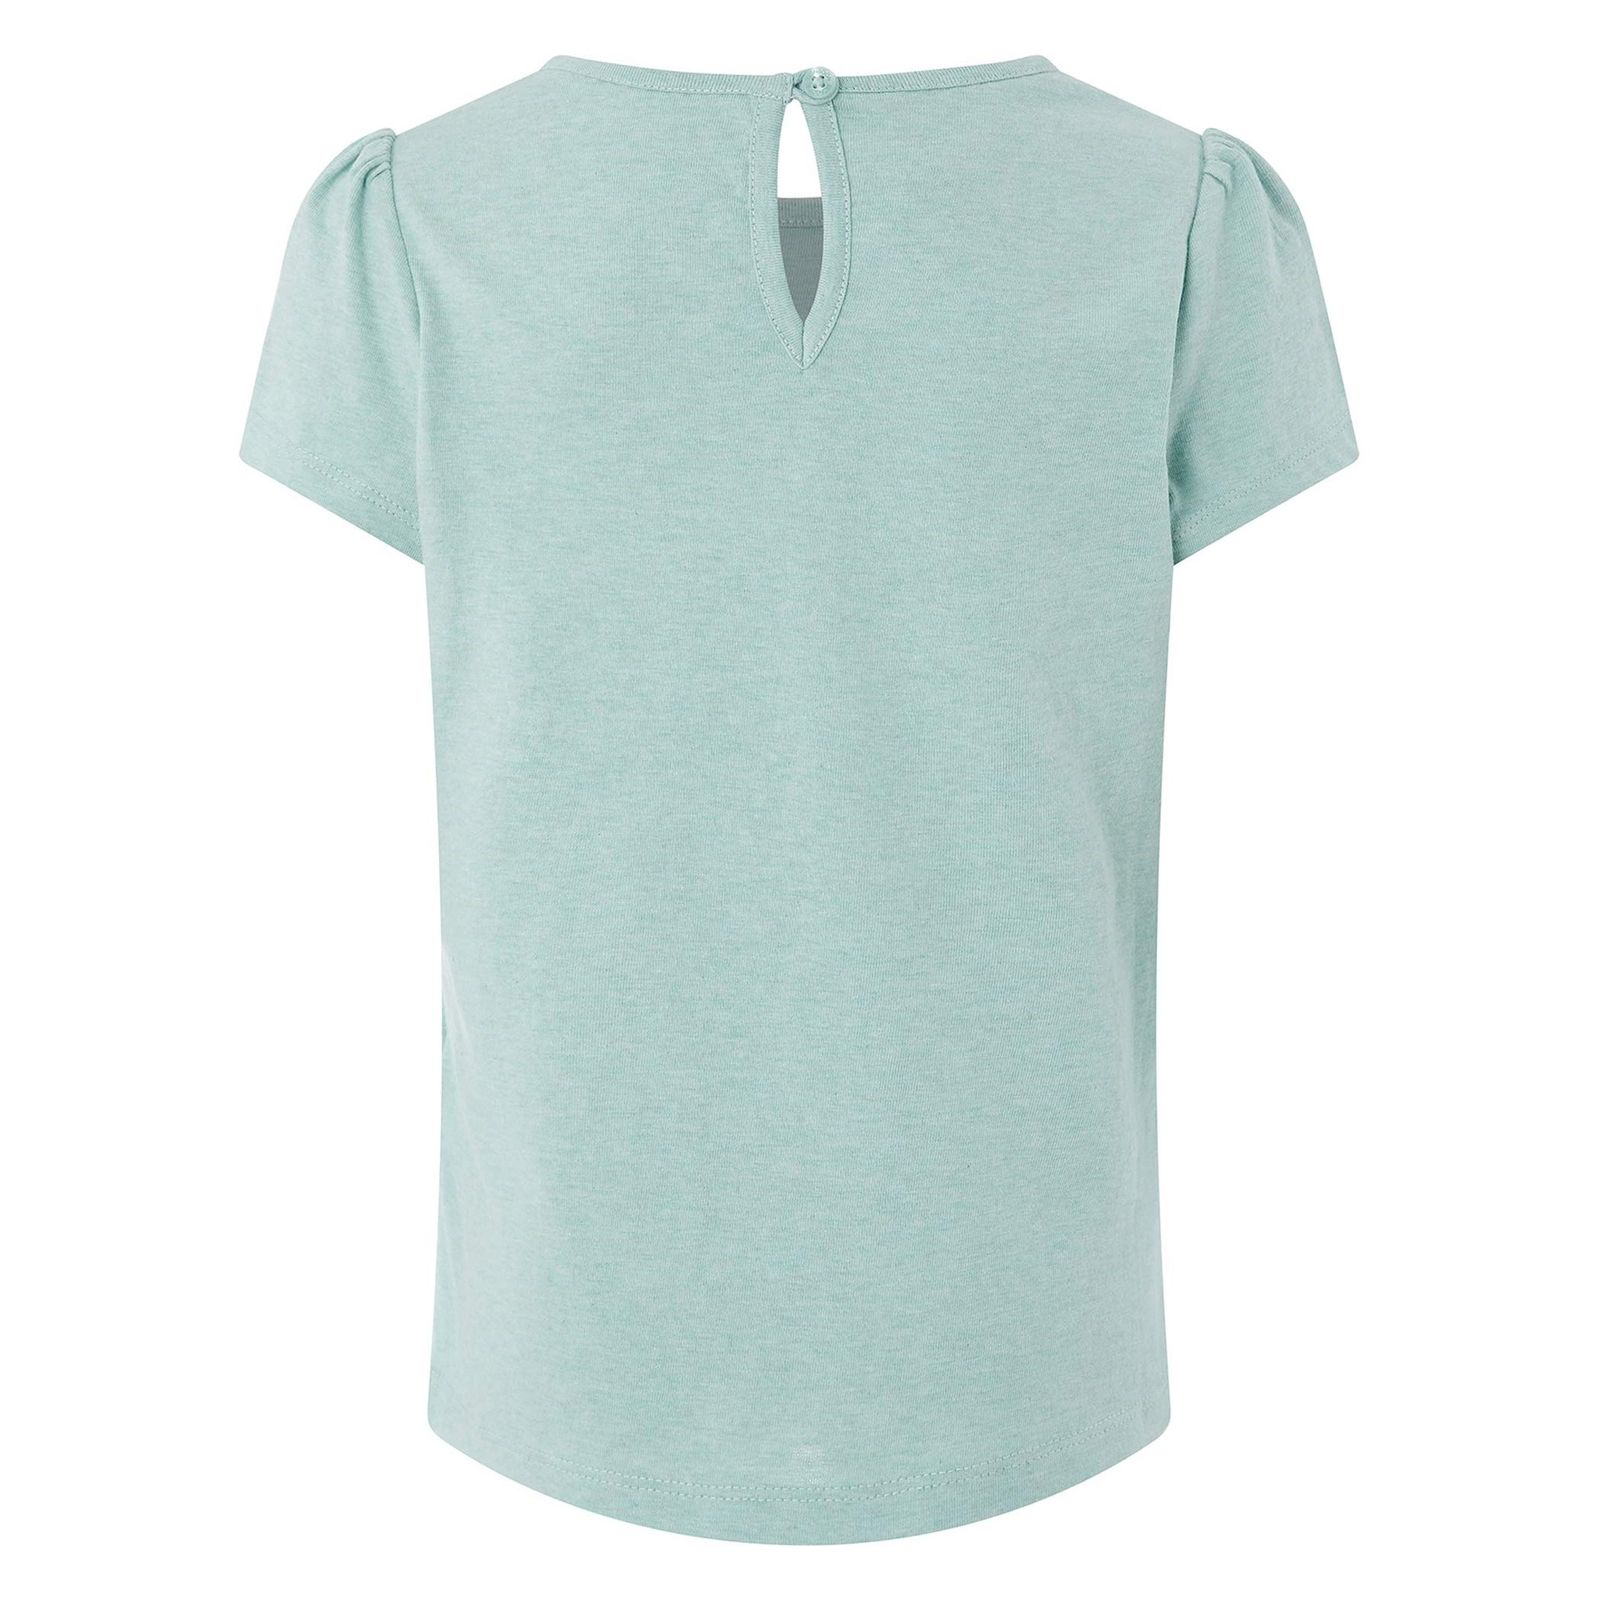 تی شرت نخی آستین کوتاه دخترانه - مانسون چیلدرن - سبز پسته اي - 3